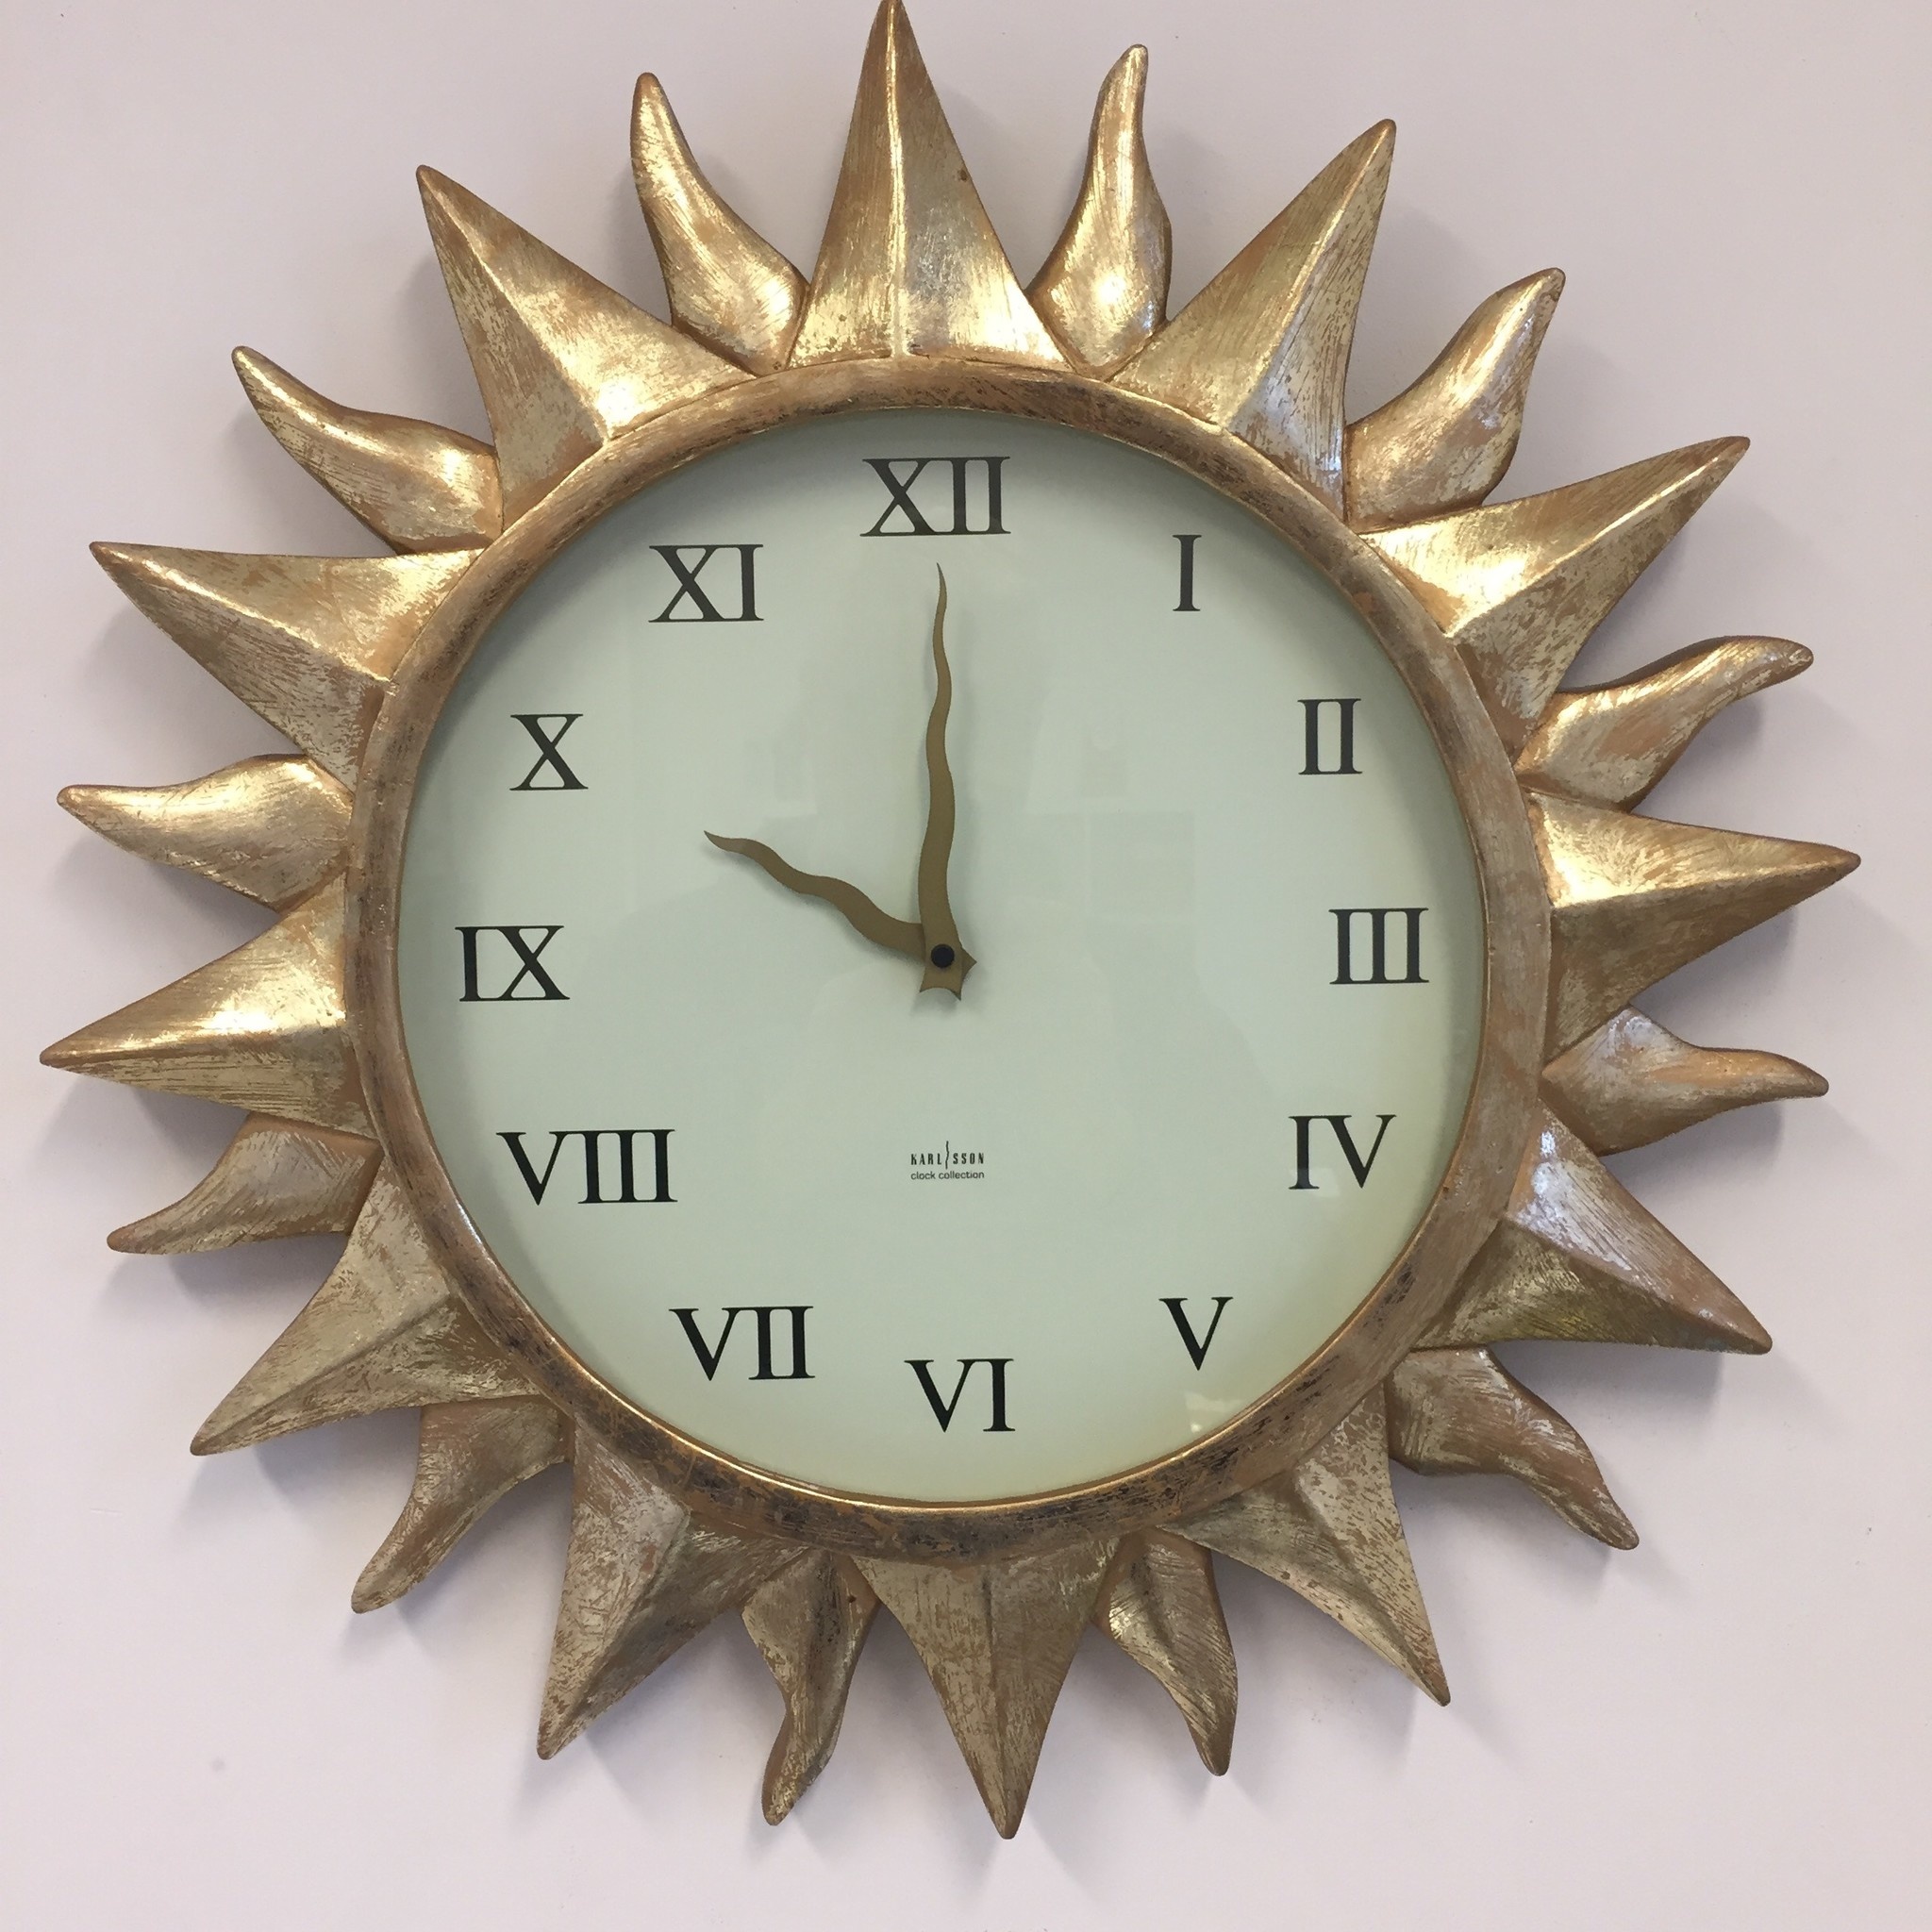 NiceTime Design - sun clock Gold Regency